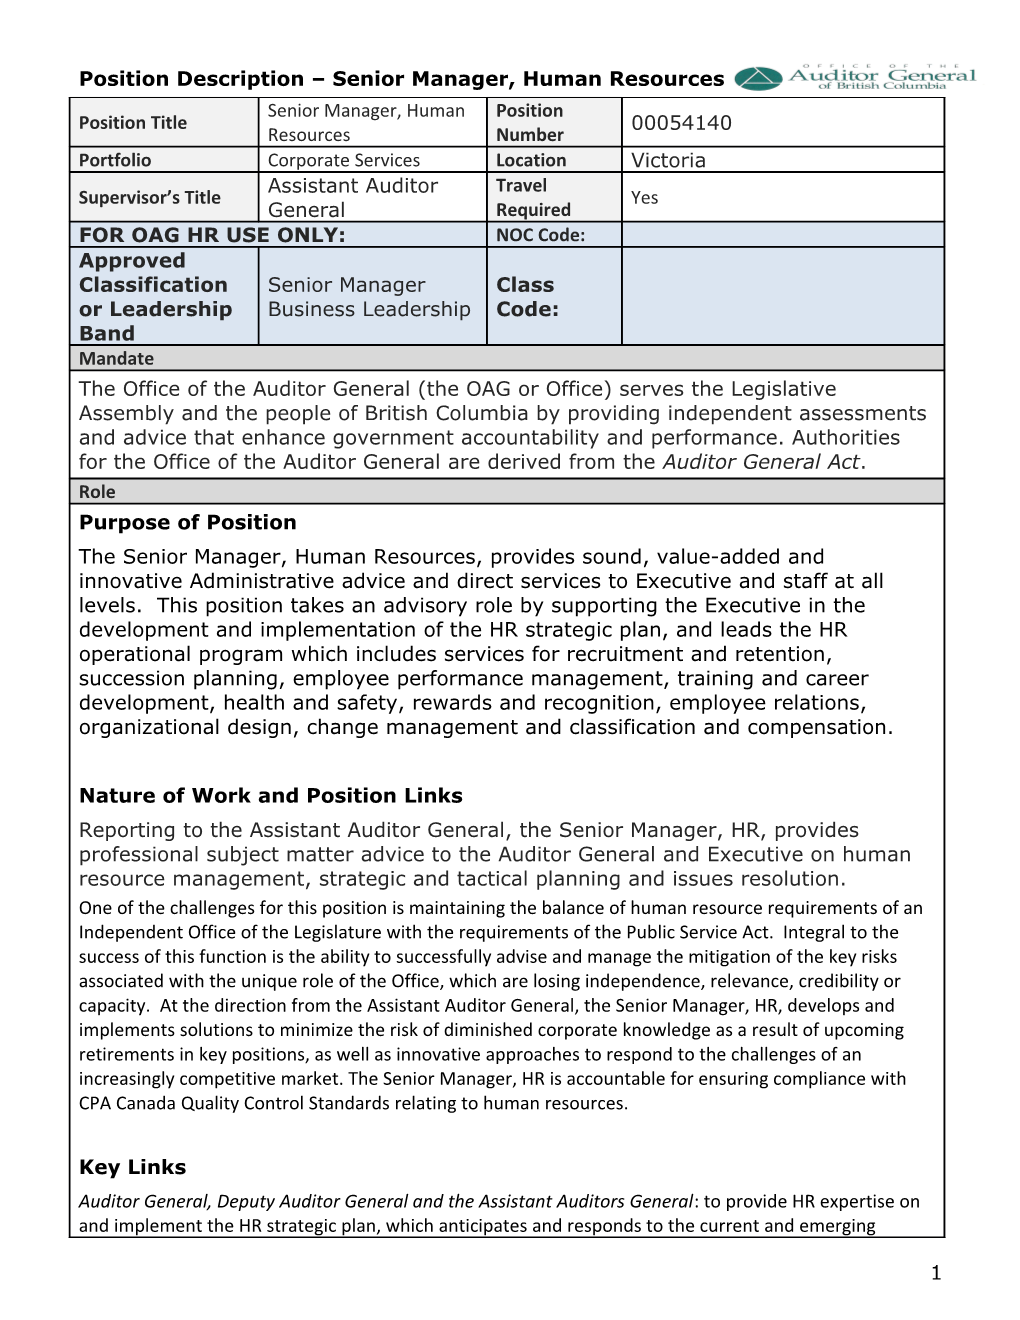 Position Description Senior Manager, Human Resources